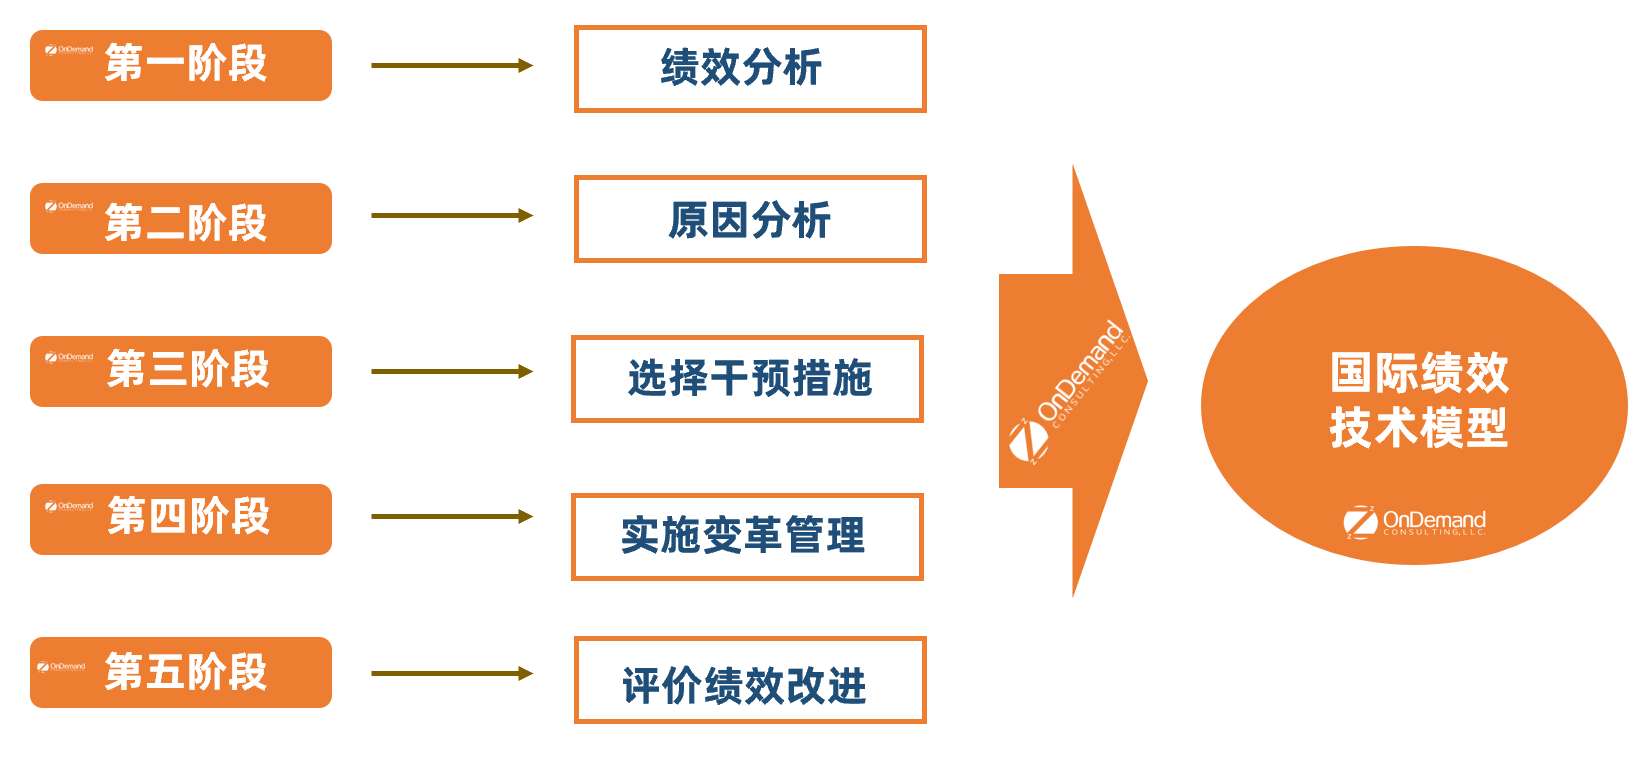 图3-2 绩效技术模型